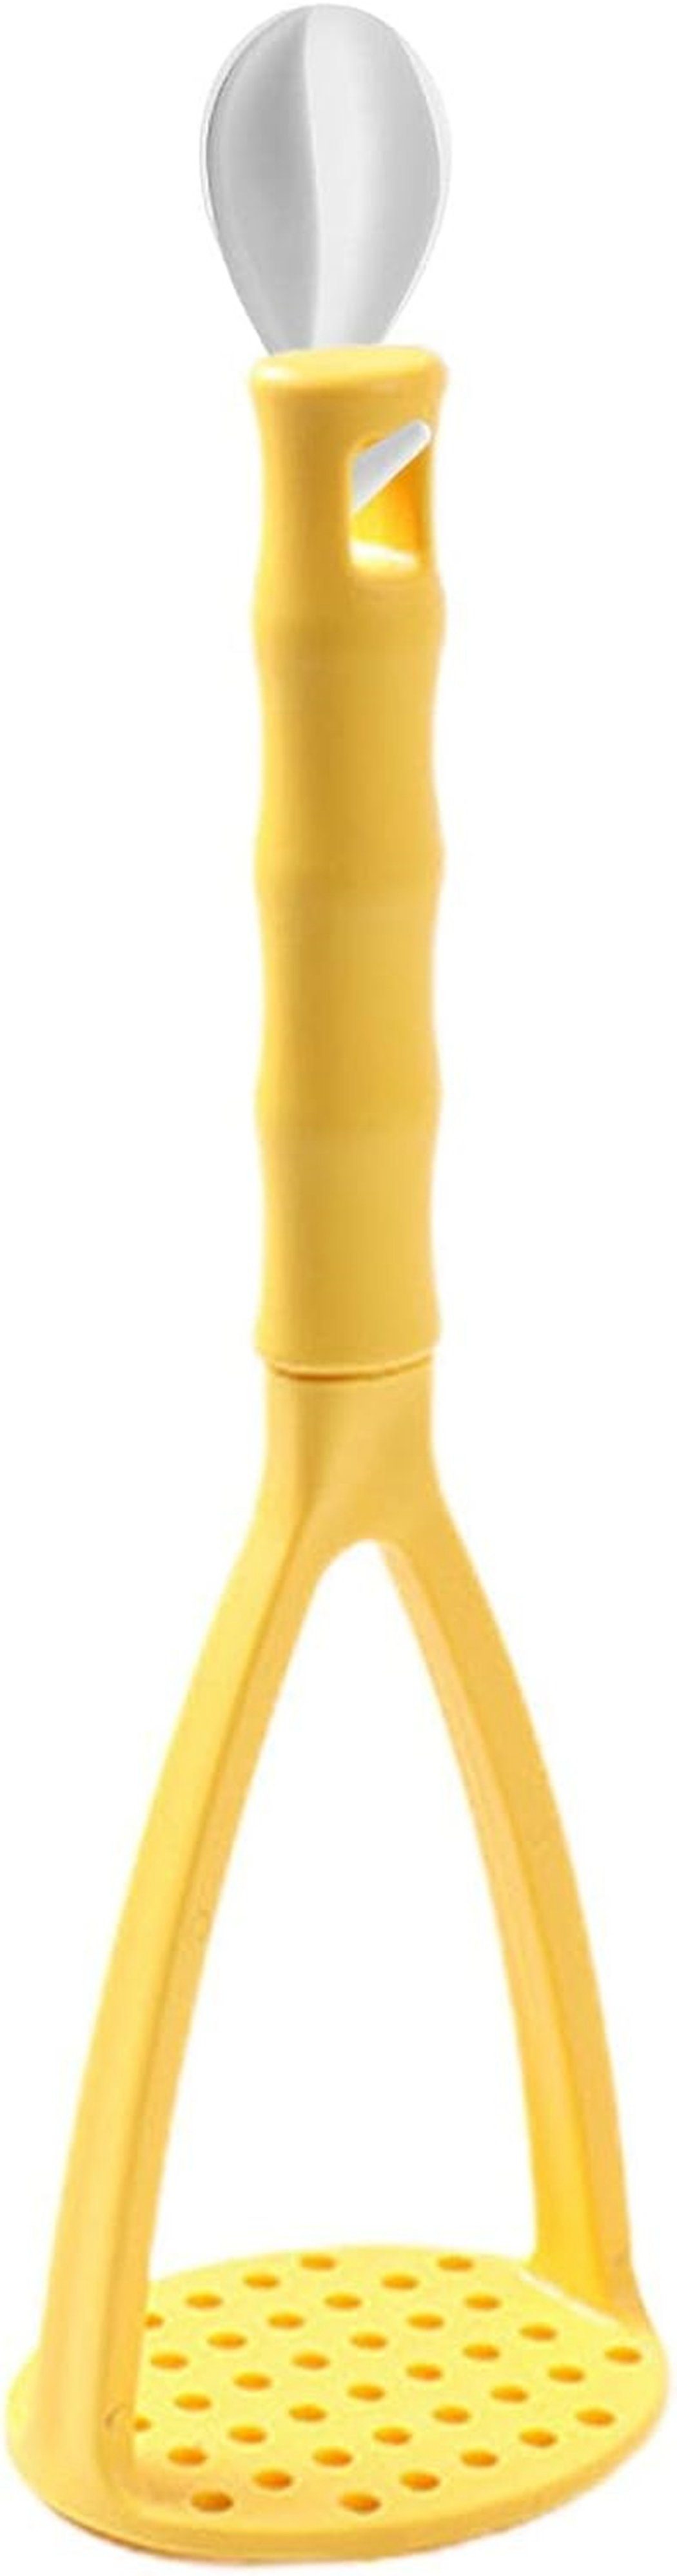 TUABUR Gelb Kartoffelstampfer Kartoffelpüree-Artefakt-Kürbisstampfer-Werkzeug